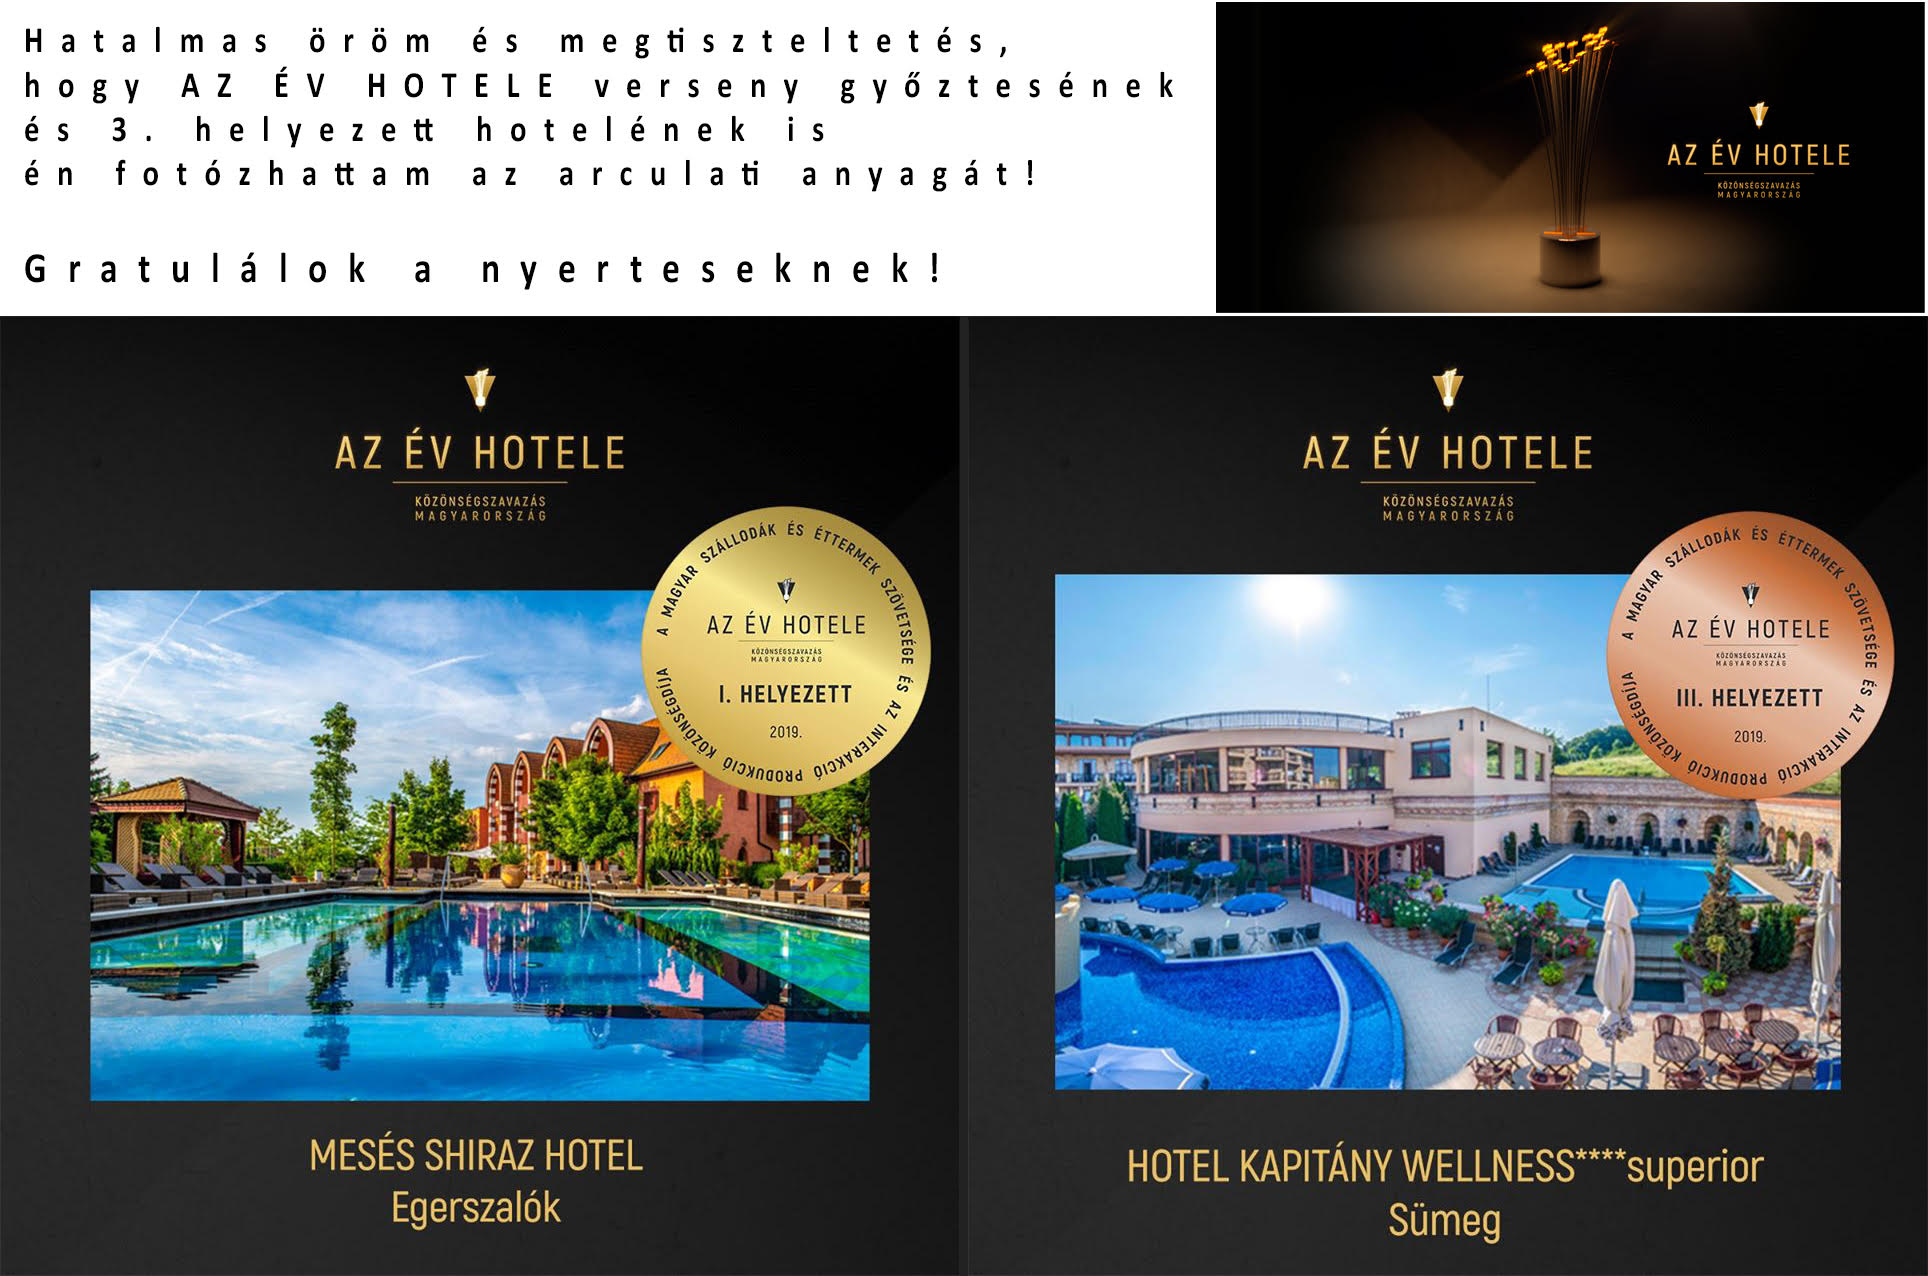 Partnereink, év hotele verseny díjazottjai